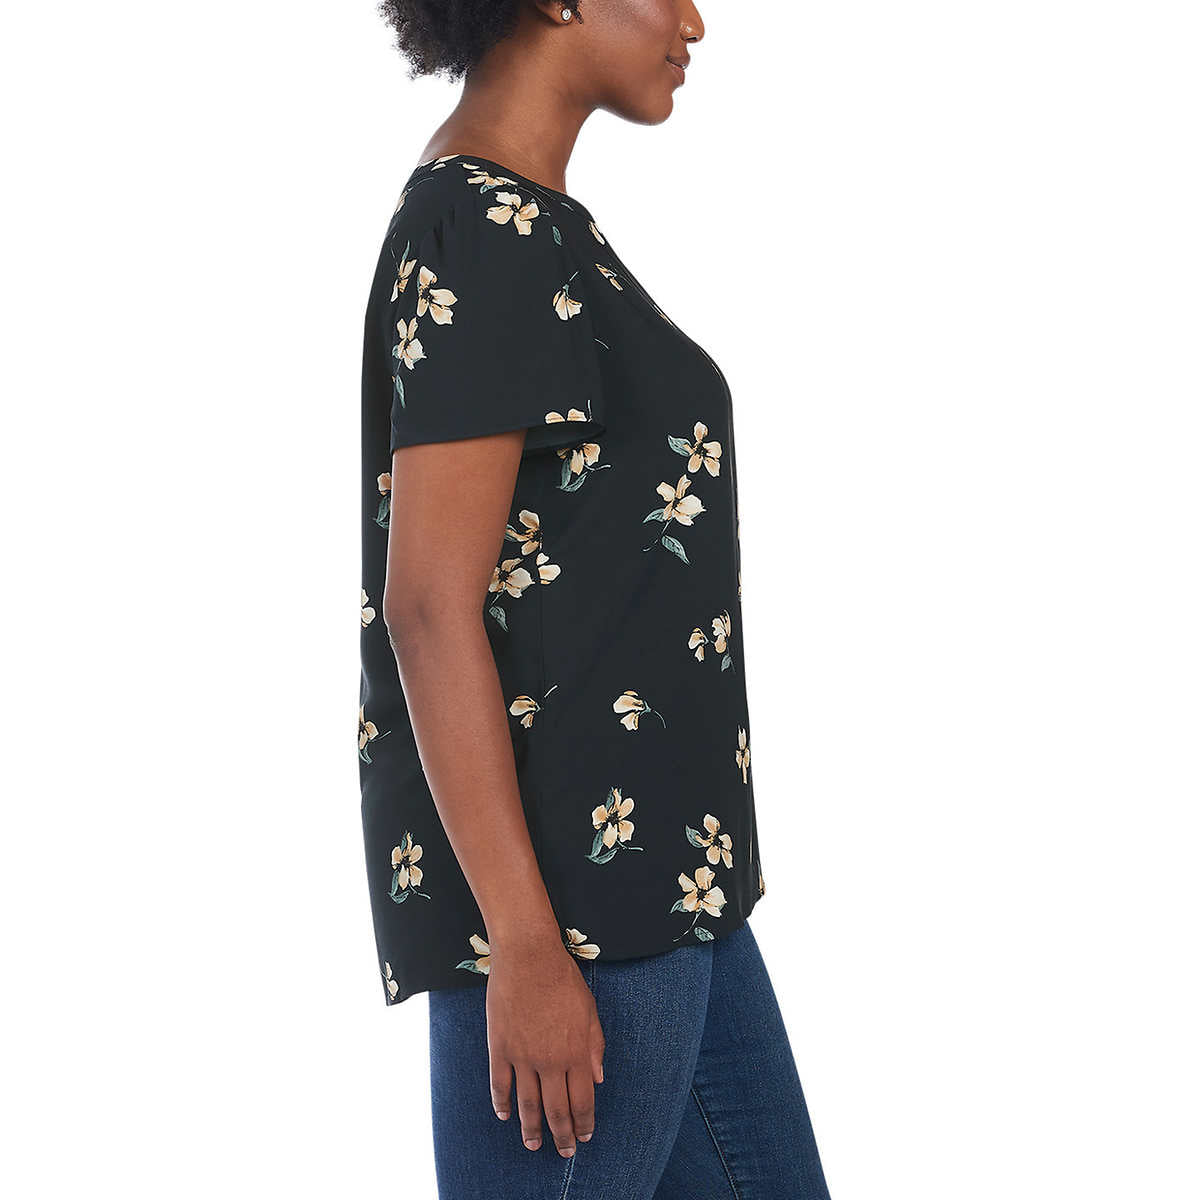 Hilary Radley Women's V-Neck Flutter Sleeves Lightweight Floral Print Blouse Top